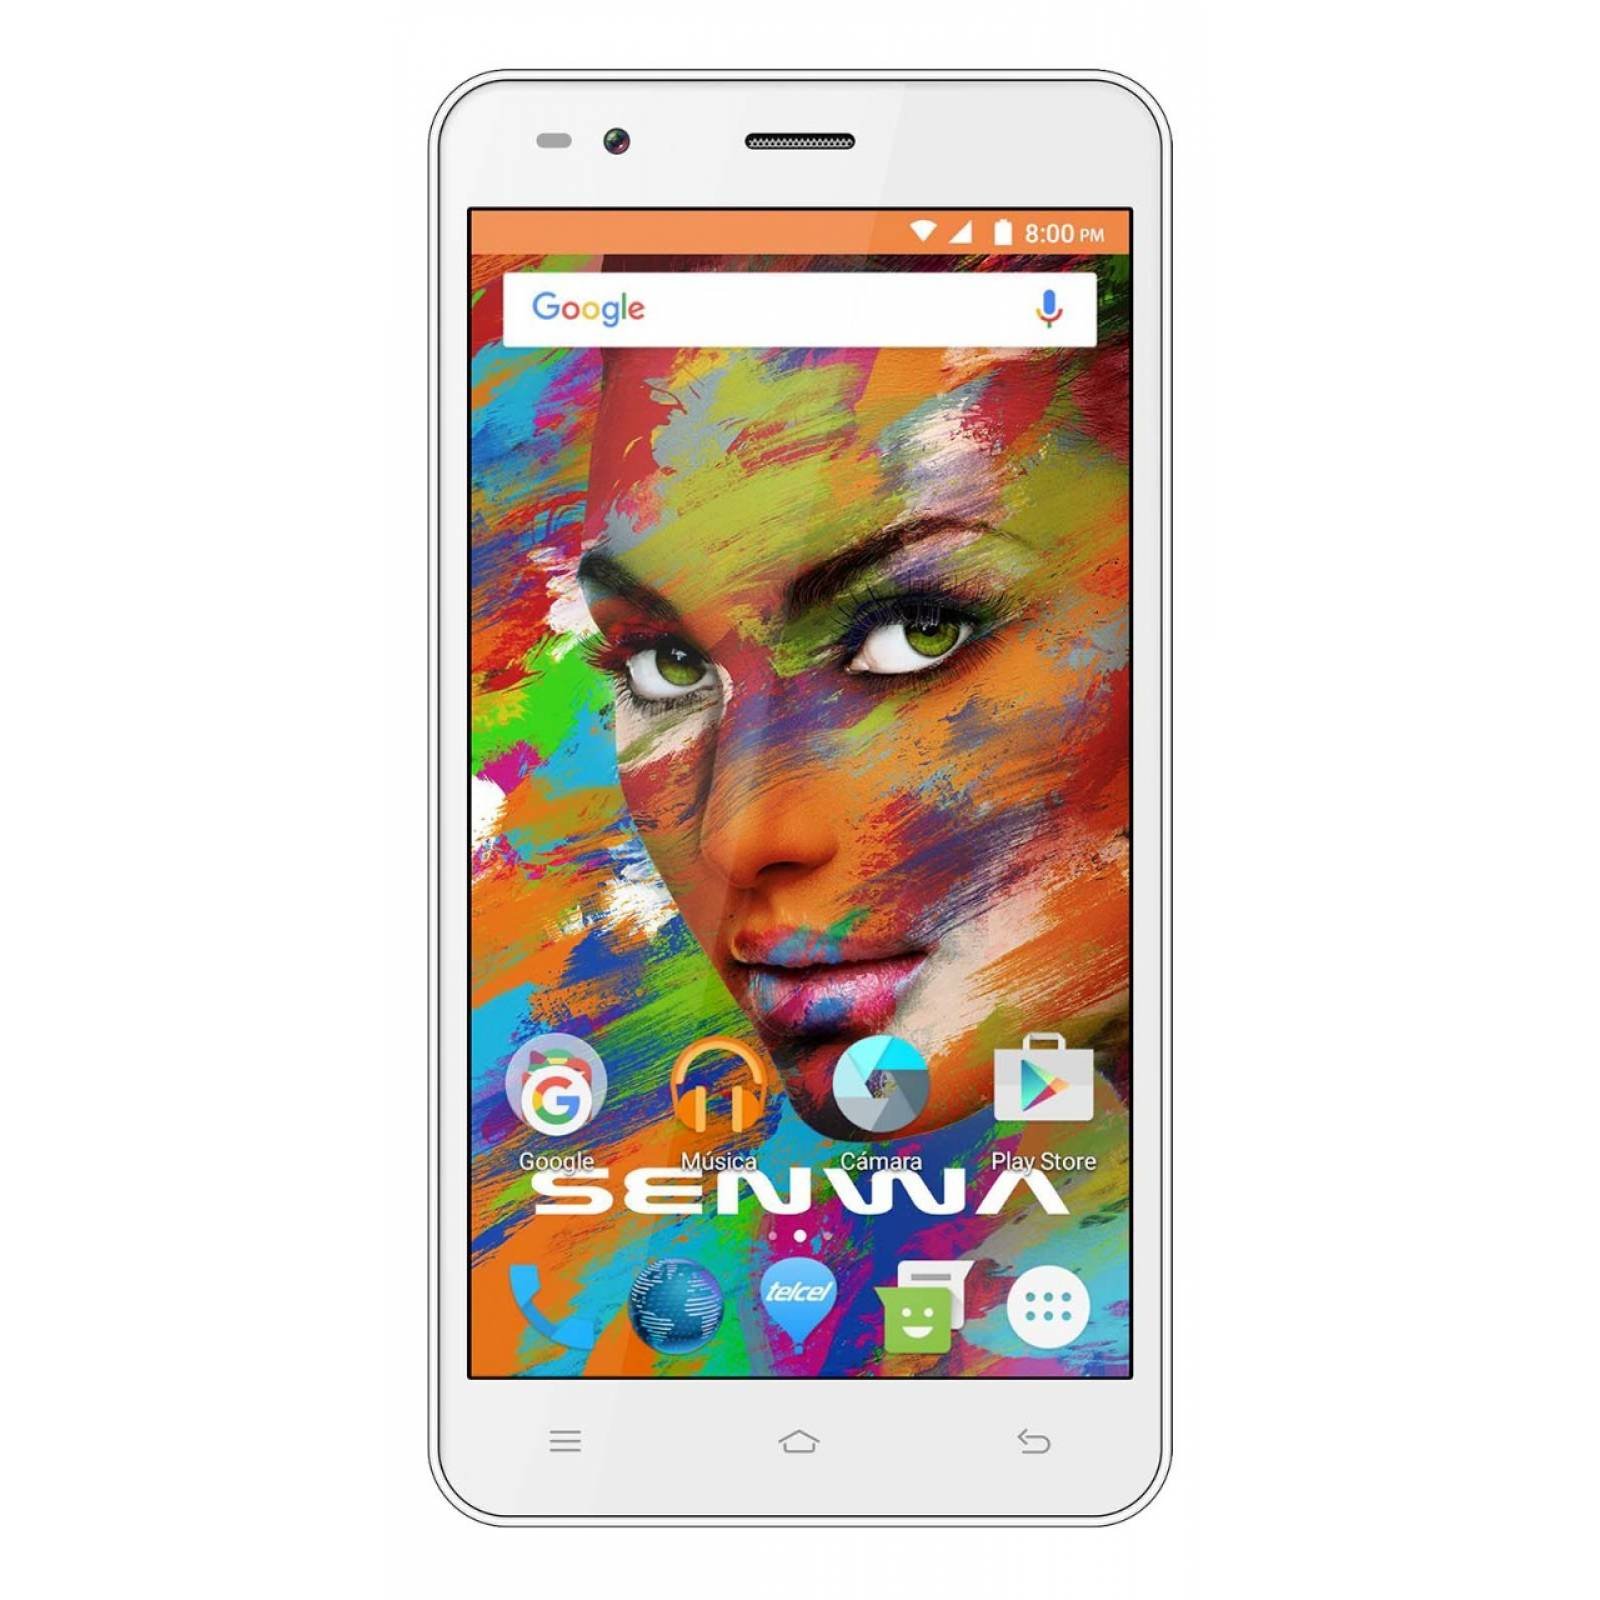 Celular SENWA 3G S6000  COLOSSUS Color DORADO Telcel